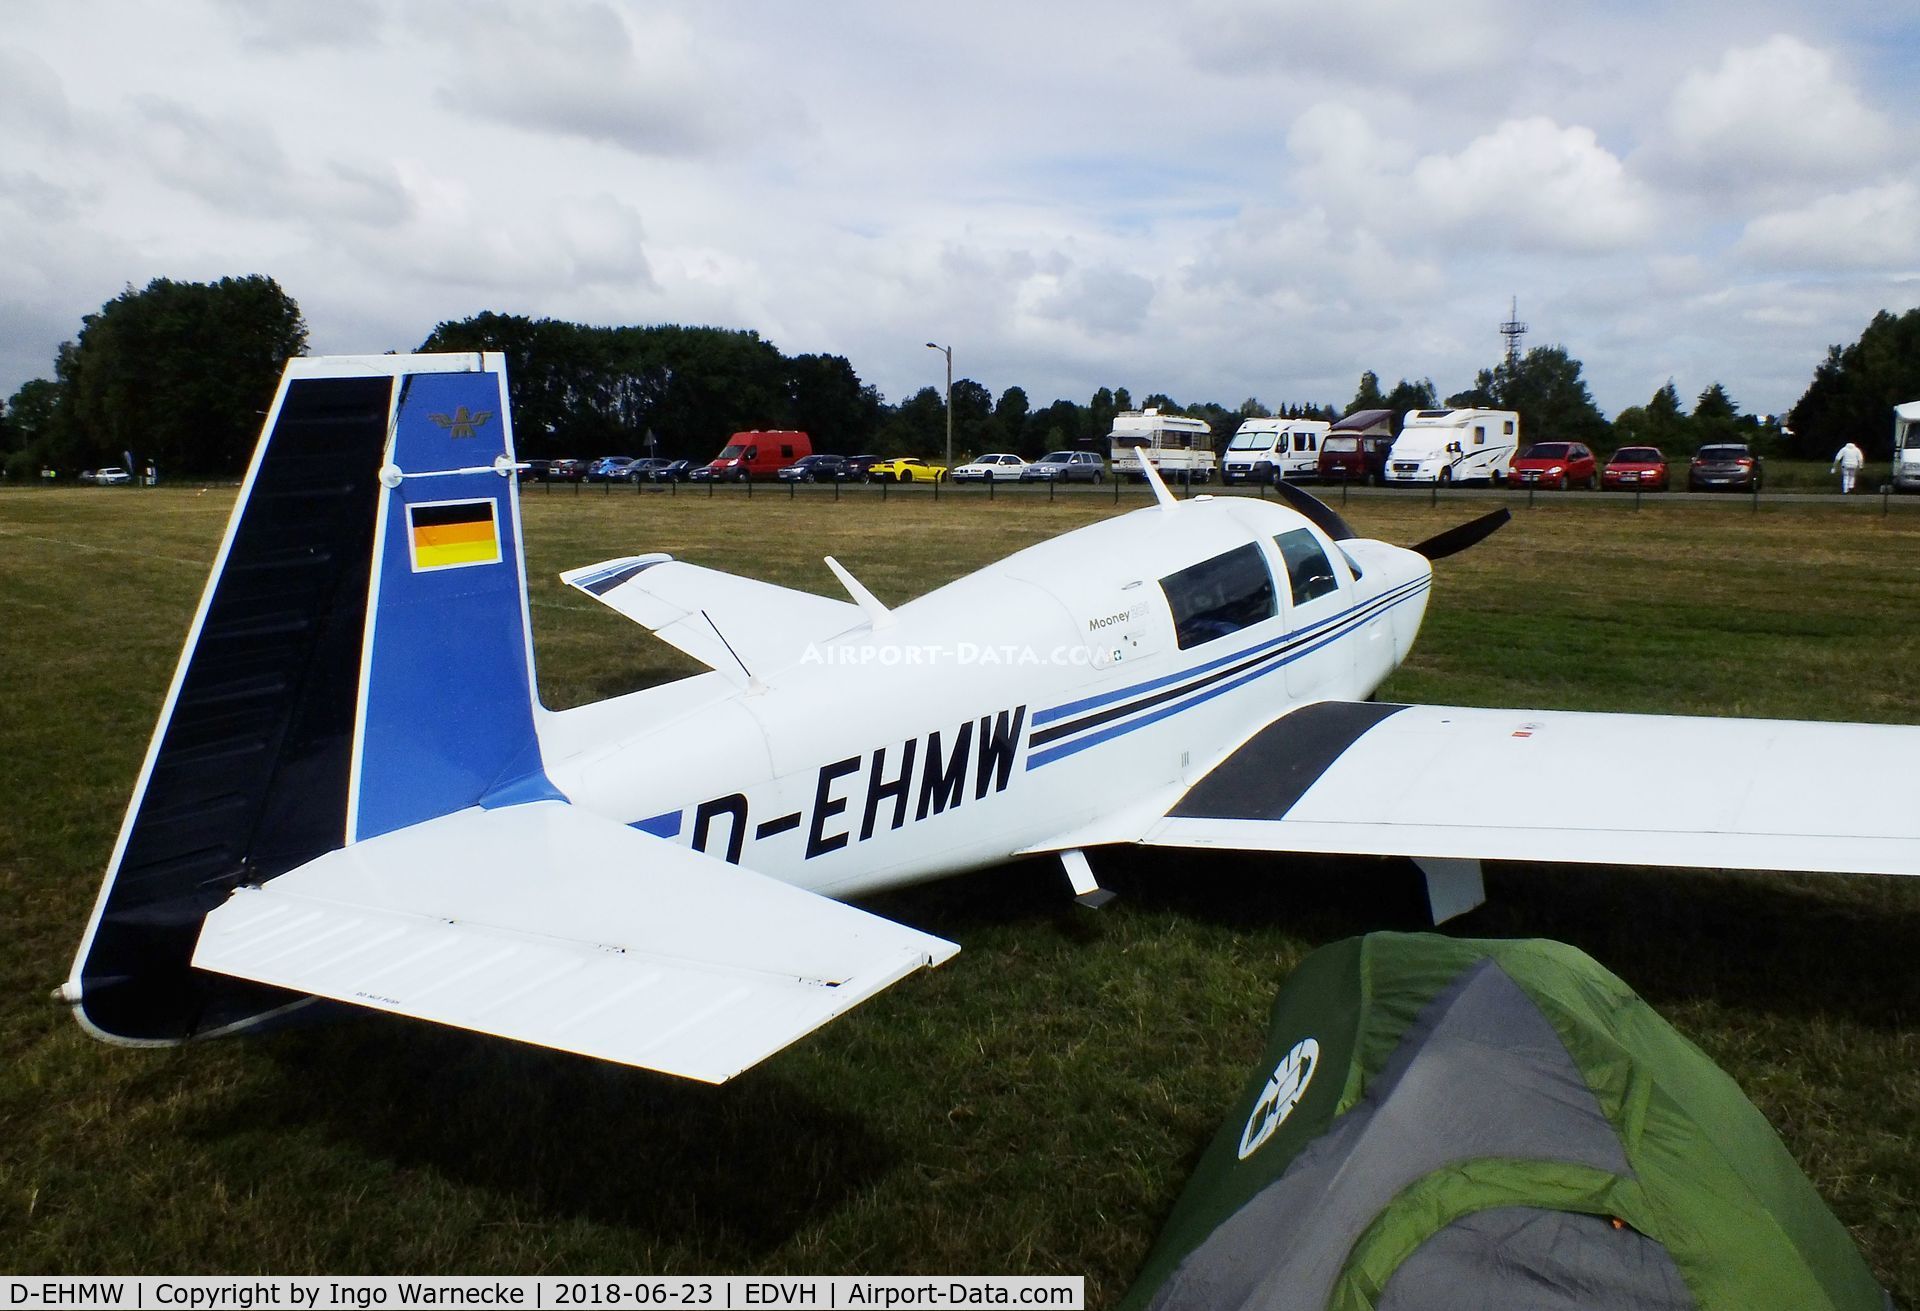 D-EHMW, 1983 Mooney M20J 201 201 C/N 24-1394, Mooney M20J 201 at the 2018 OUV-Meeting at Hodenhagen airfield